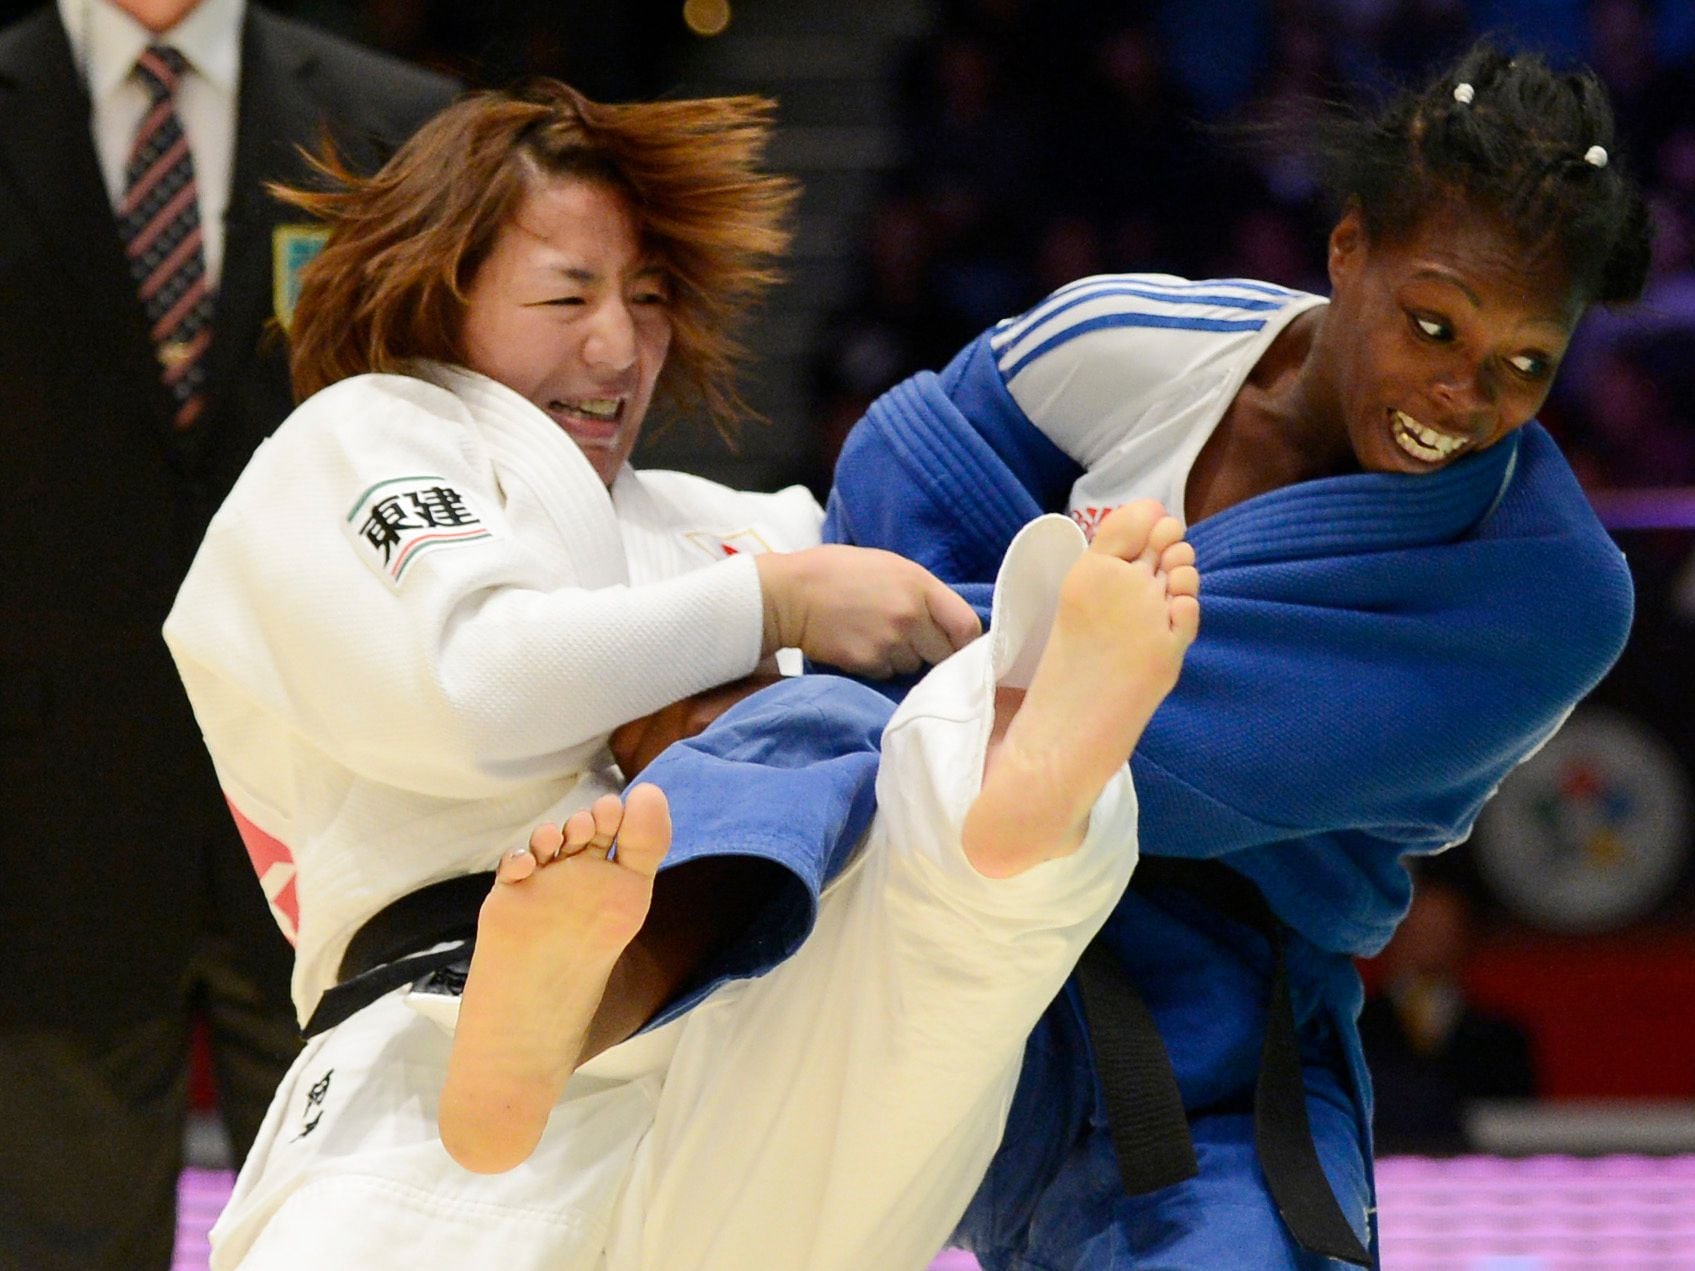 muere la judoca olímpica maricet espinosa gonzález a los 34 años